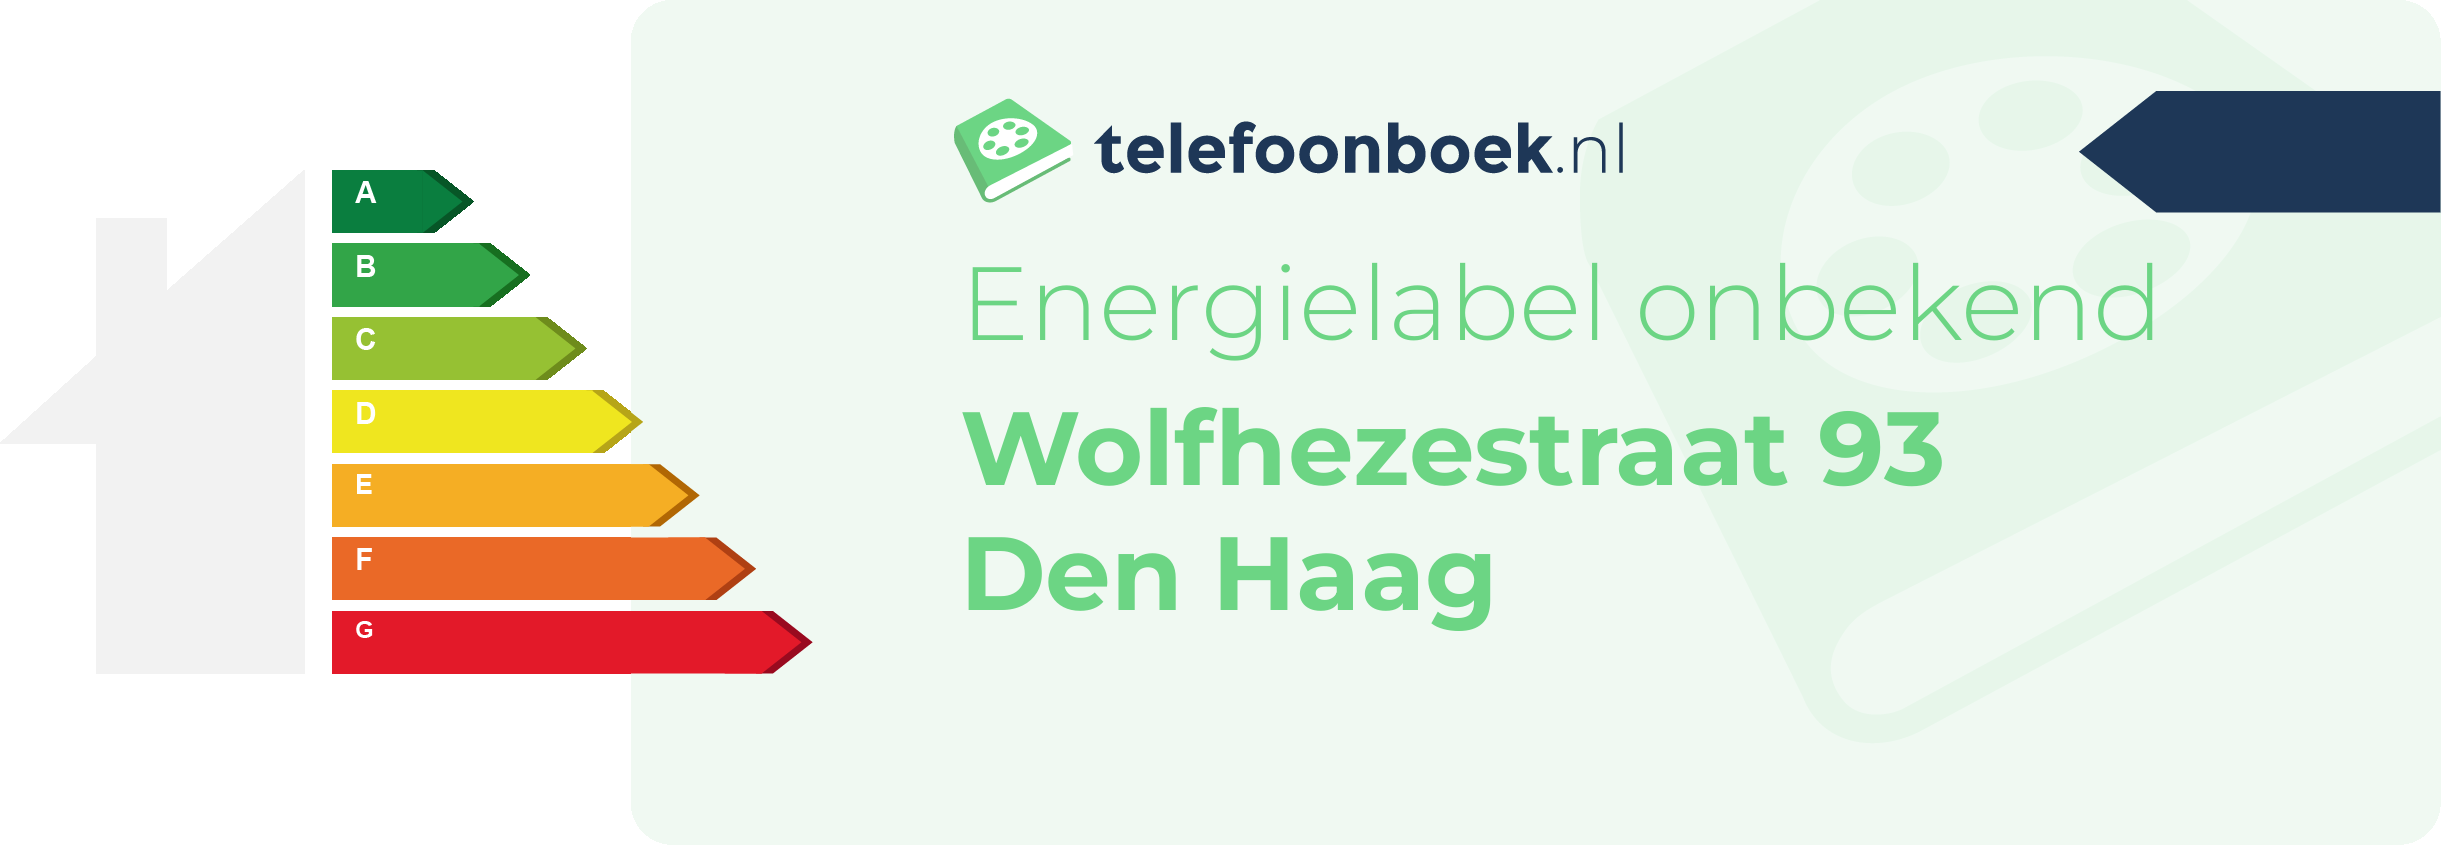 Energielabel Wolfhezestraat 93 Den Haag